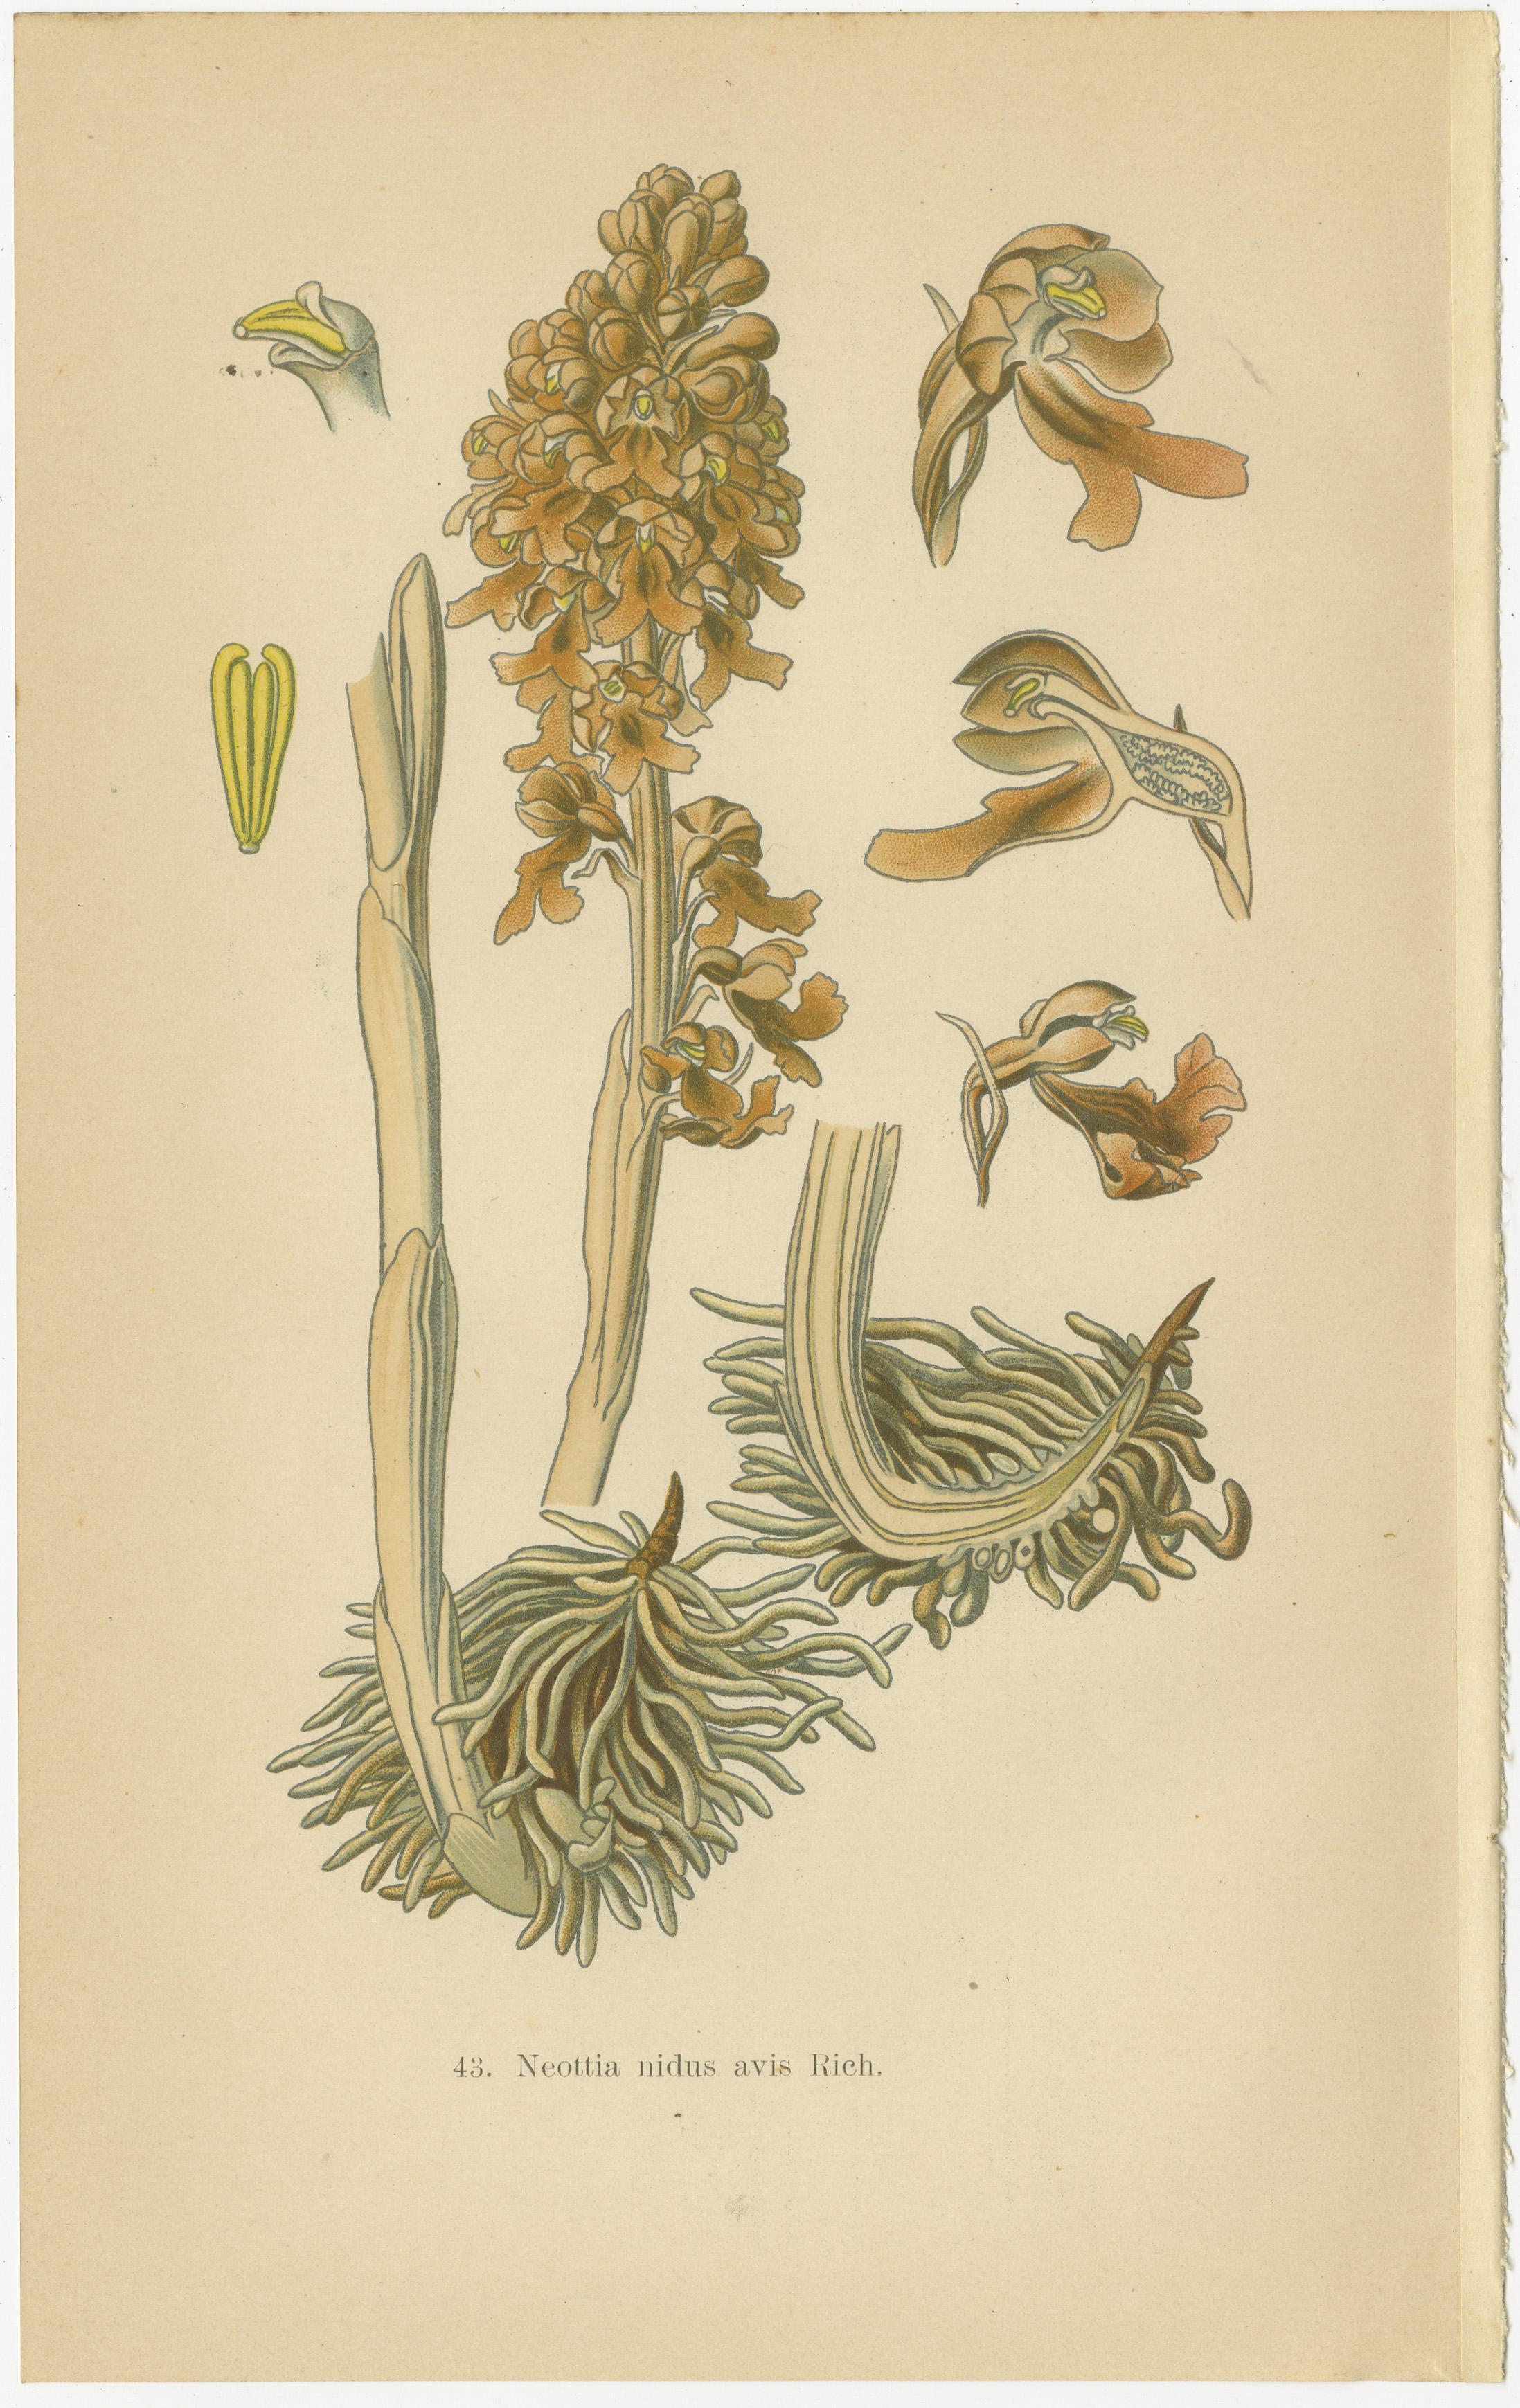 Trésors botaniques : Les orchidées de la Collection S 1904 de Müller

Ce collage est un assemblage de quatre illustrations botaniques tirées du classique de Walter Müller de 1904, 